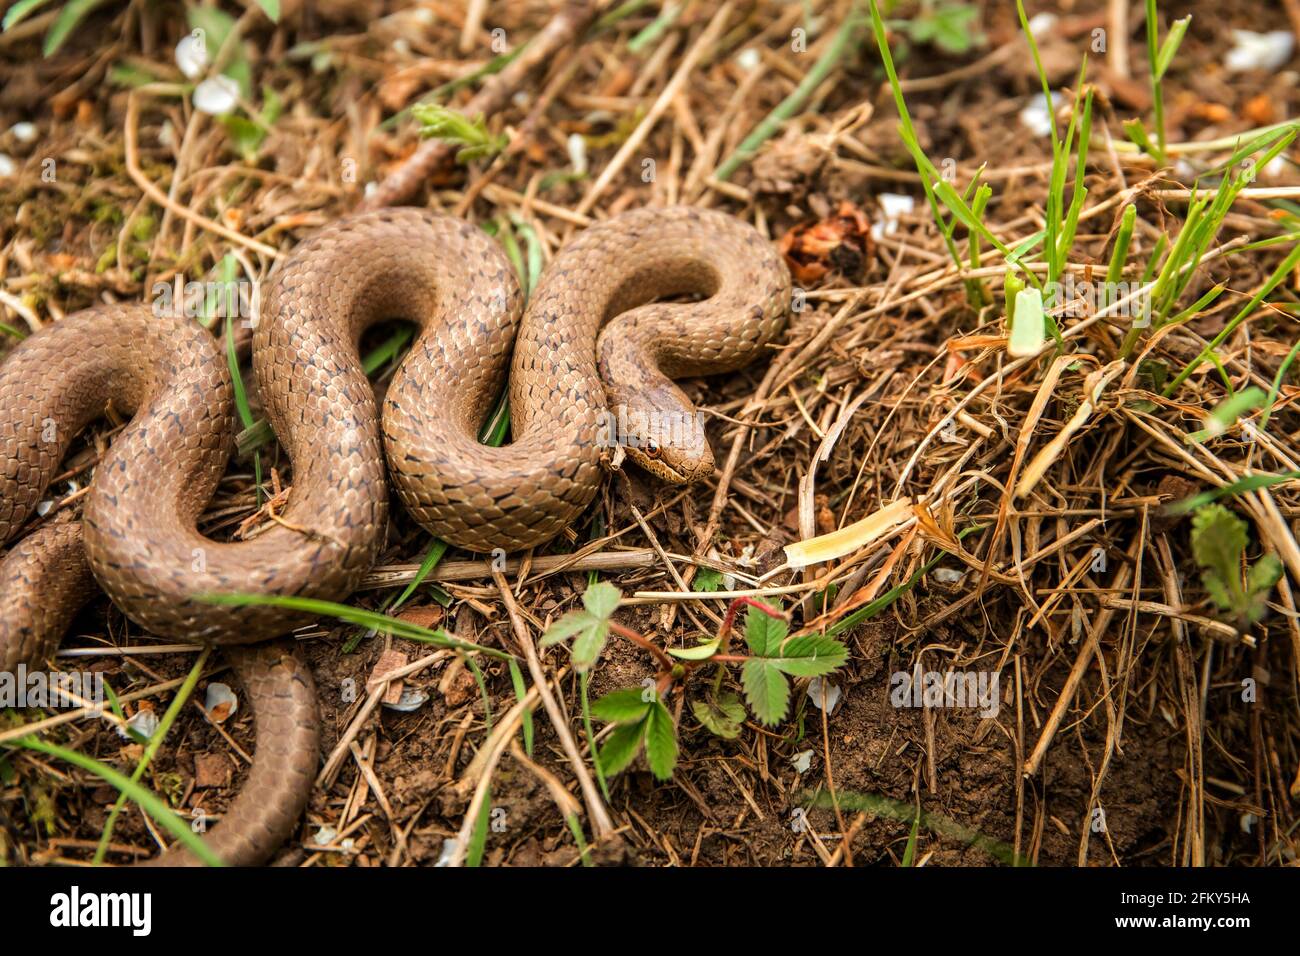 Serpent lisse - Coronella austriaca espèce de serpent brun non venimeux de la famille des Colubridae. L'espèce se trouve en Europe. Banque D'Images